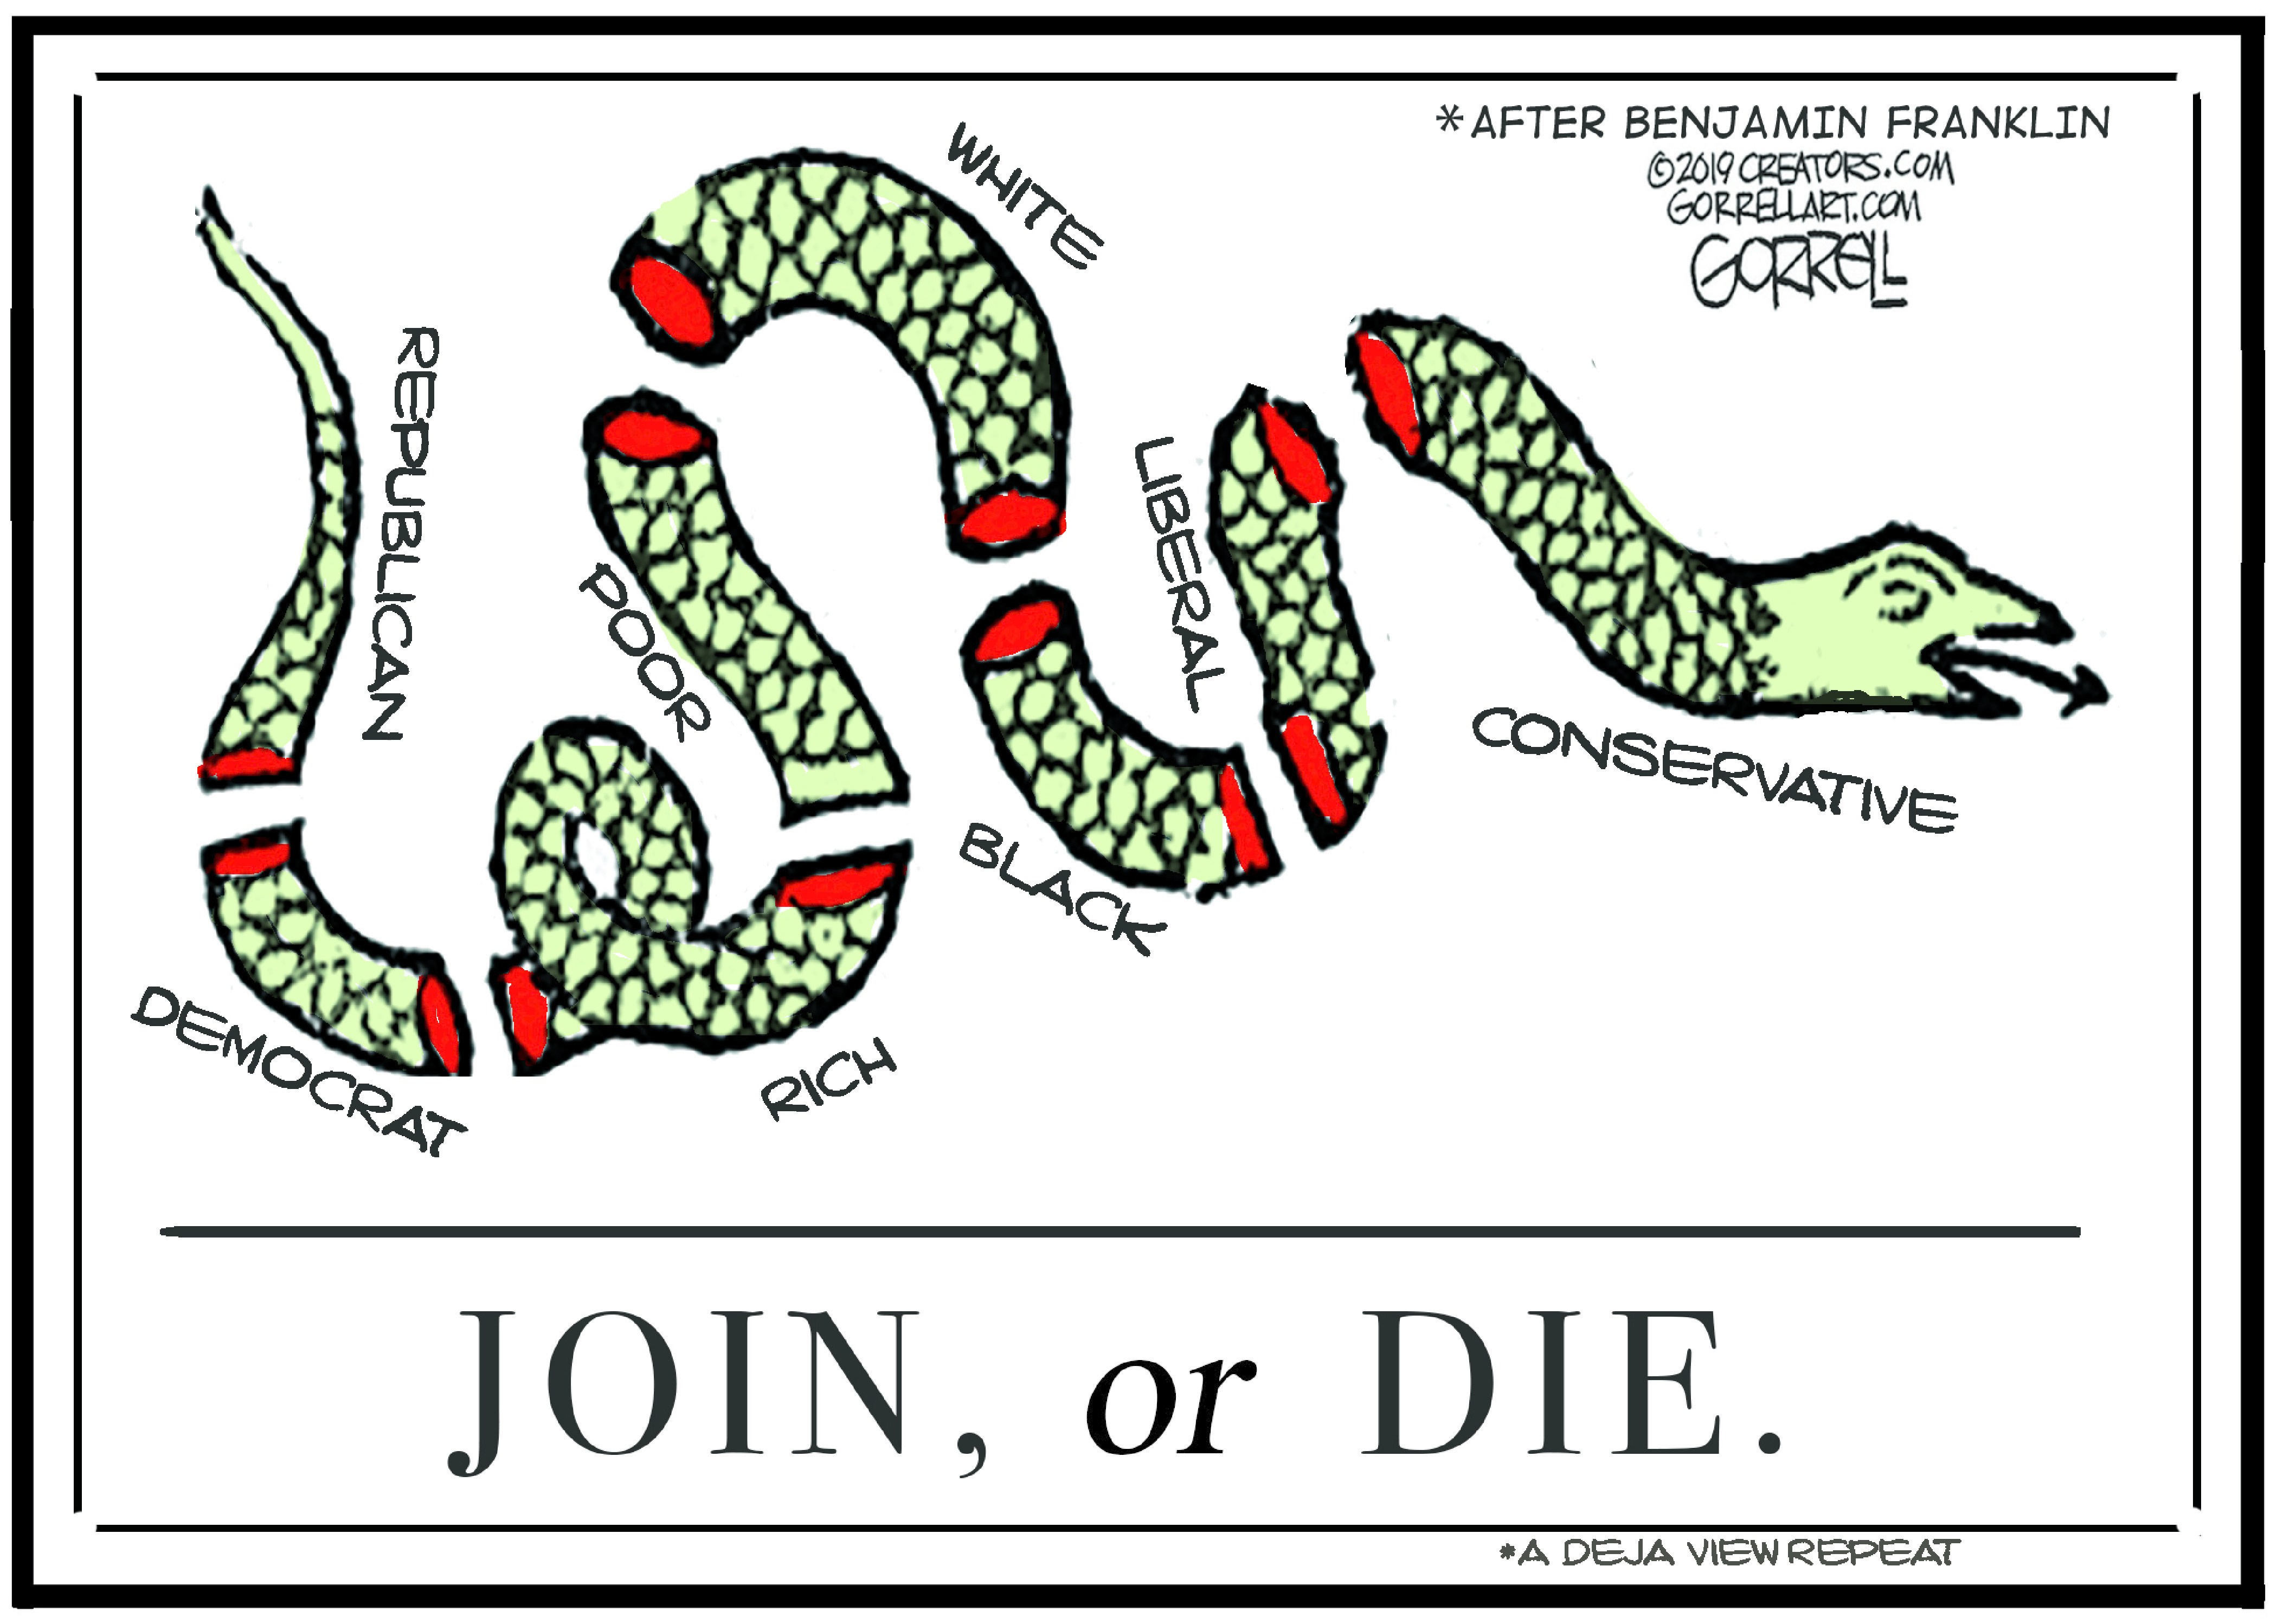 Editorial Cartoon U.S. join or die flag